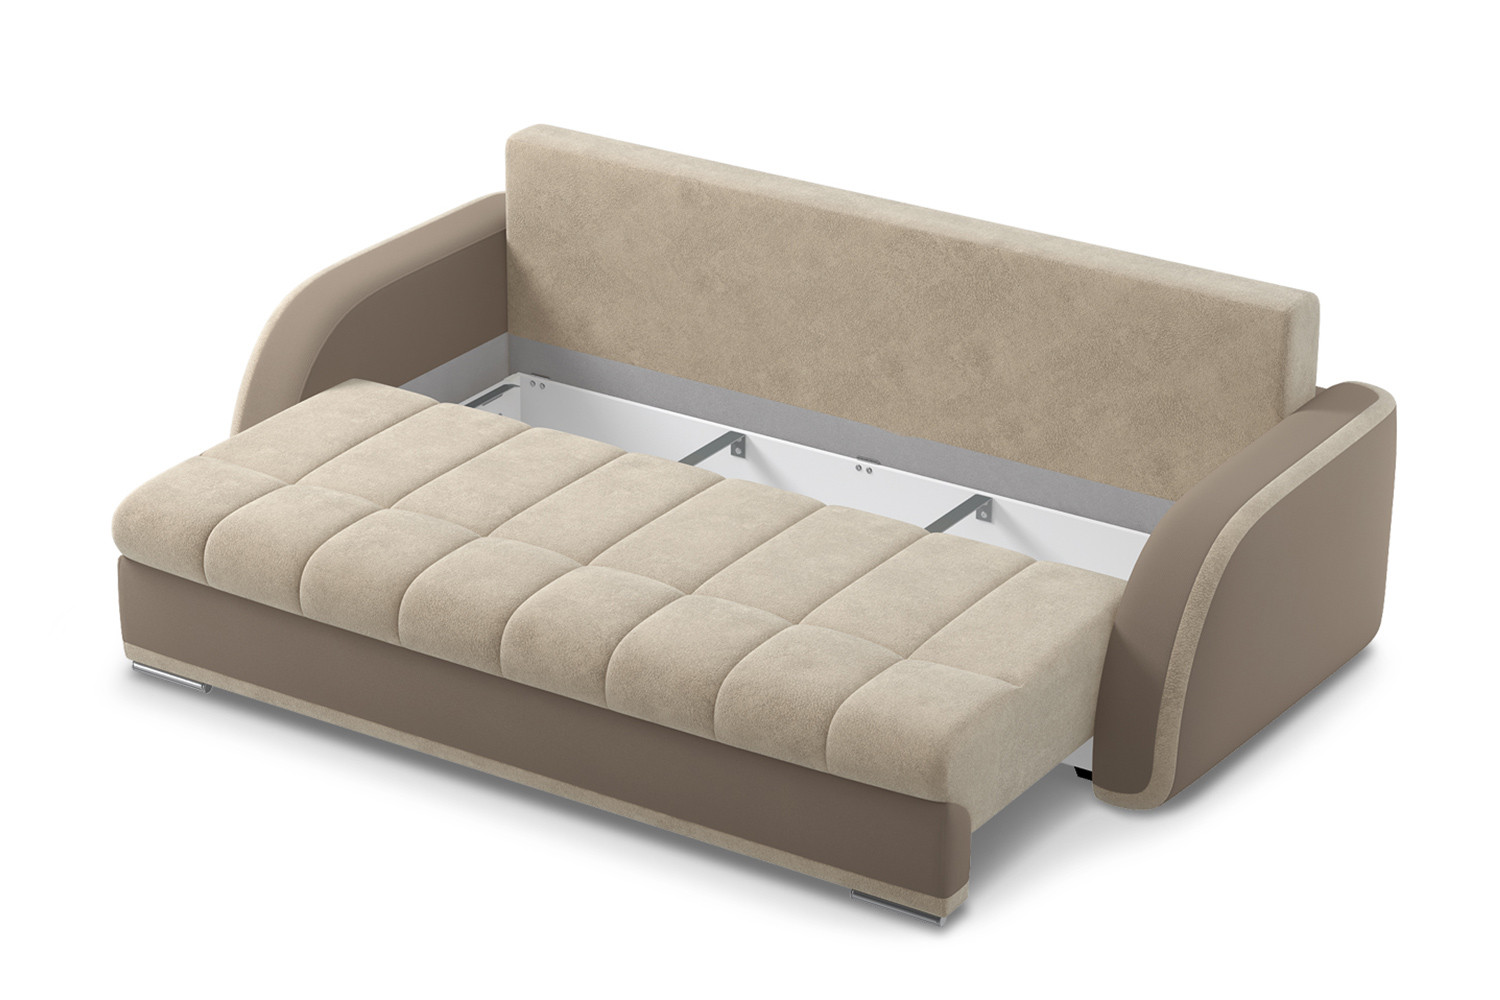 модели диванов для сна в маленькую комнату